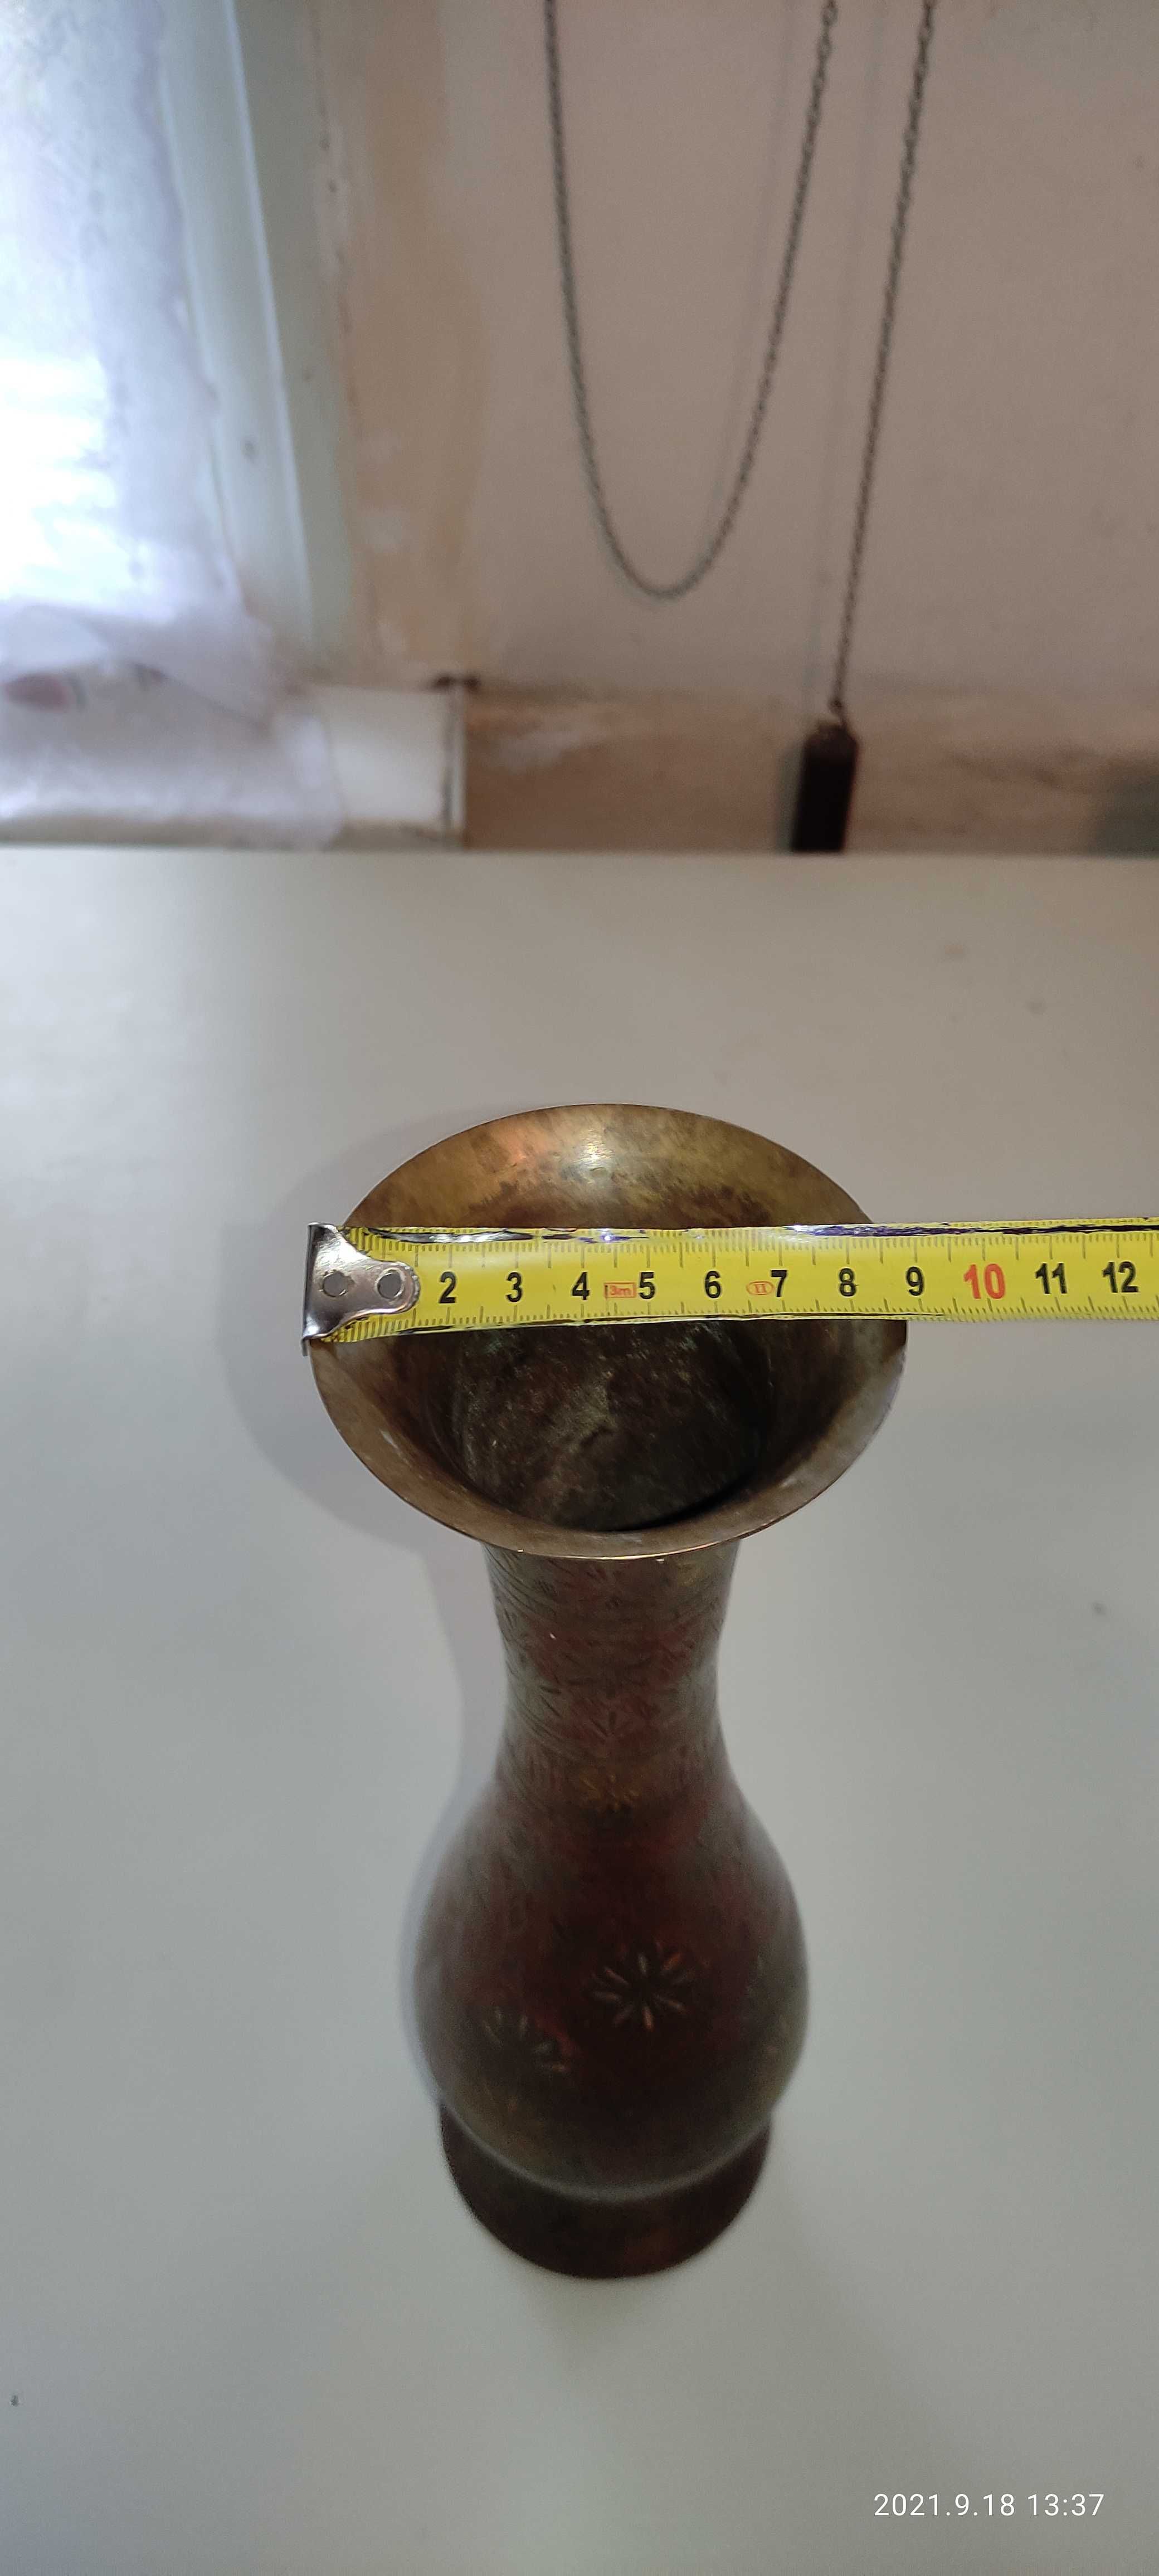 Ваза латунна 340 мм ручна робота Індія,   (Ручная работа Индия латунь)